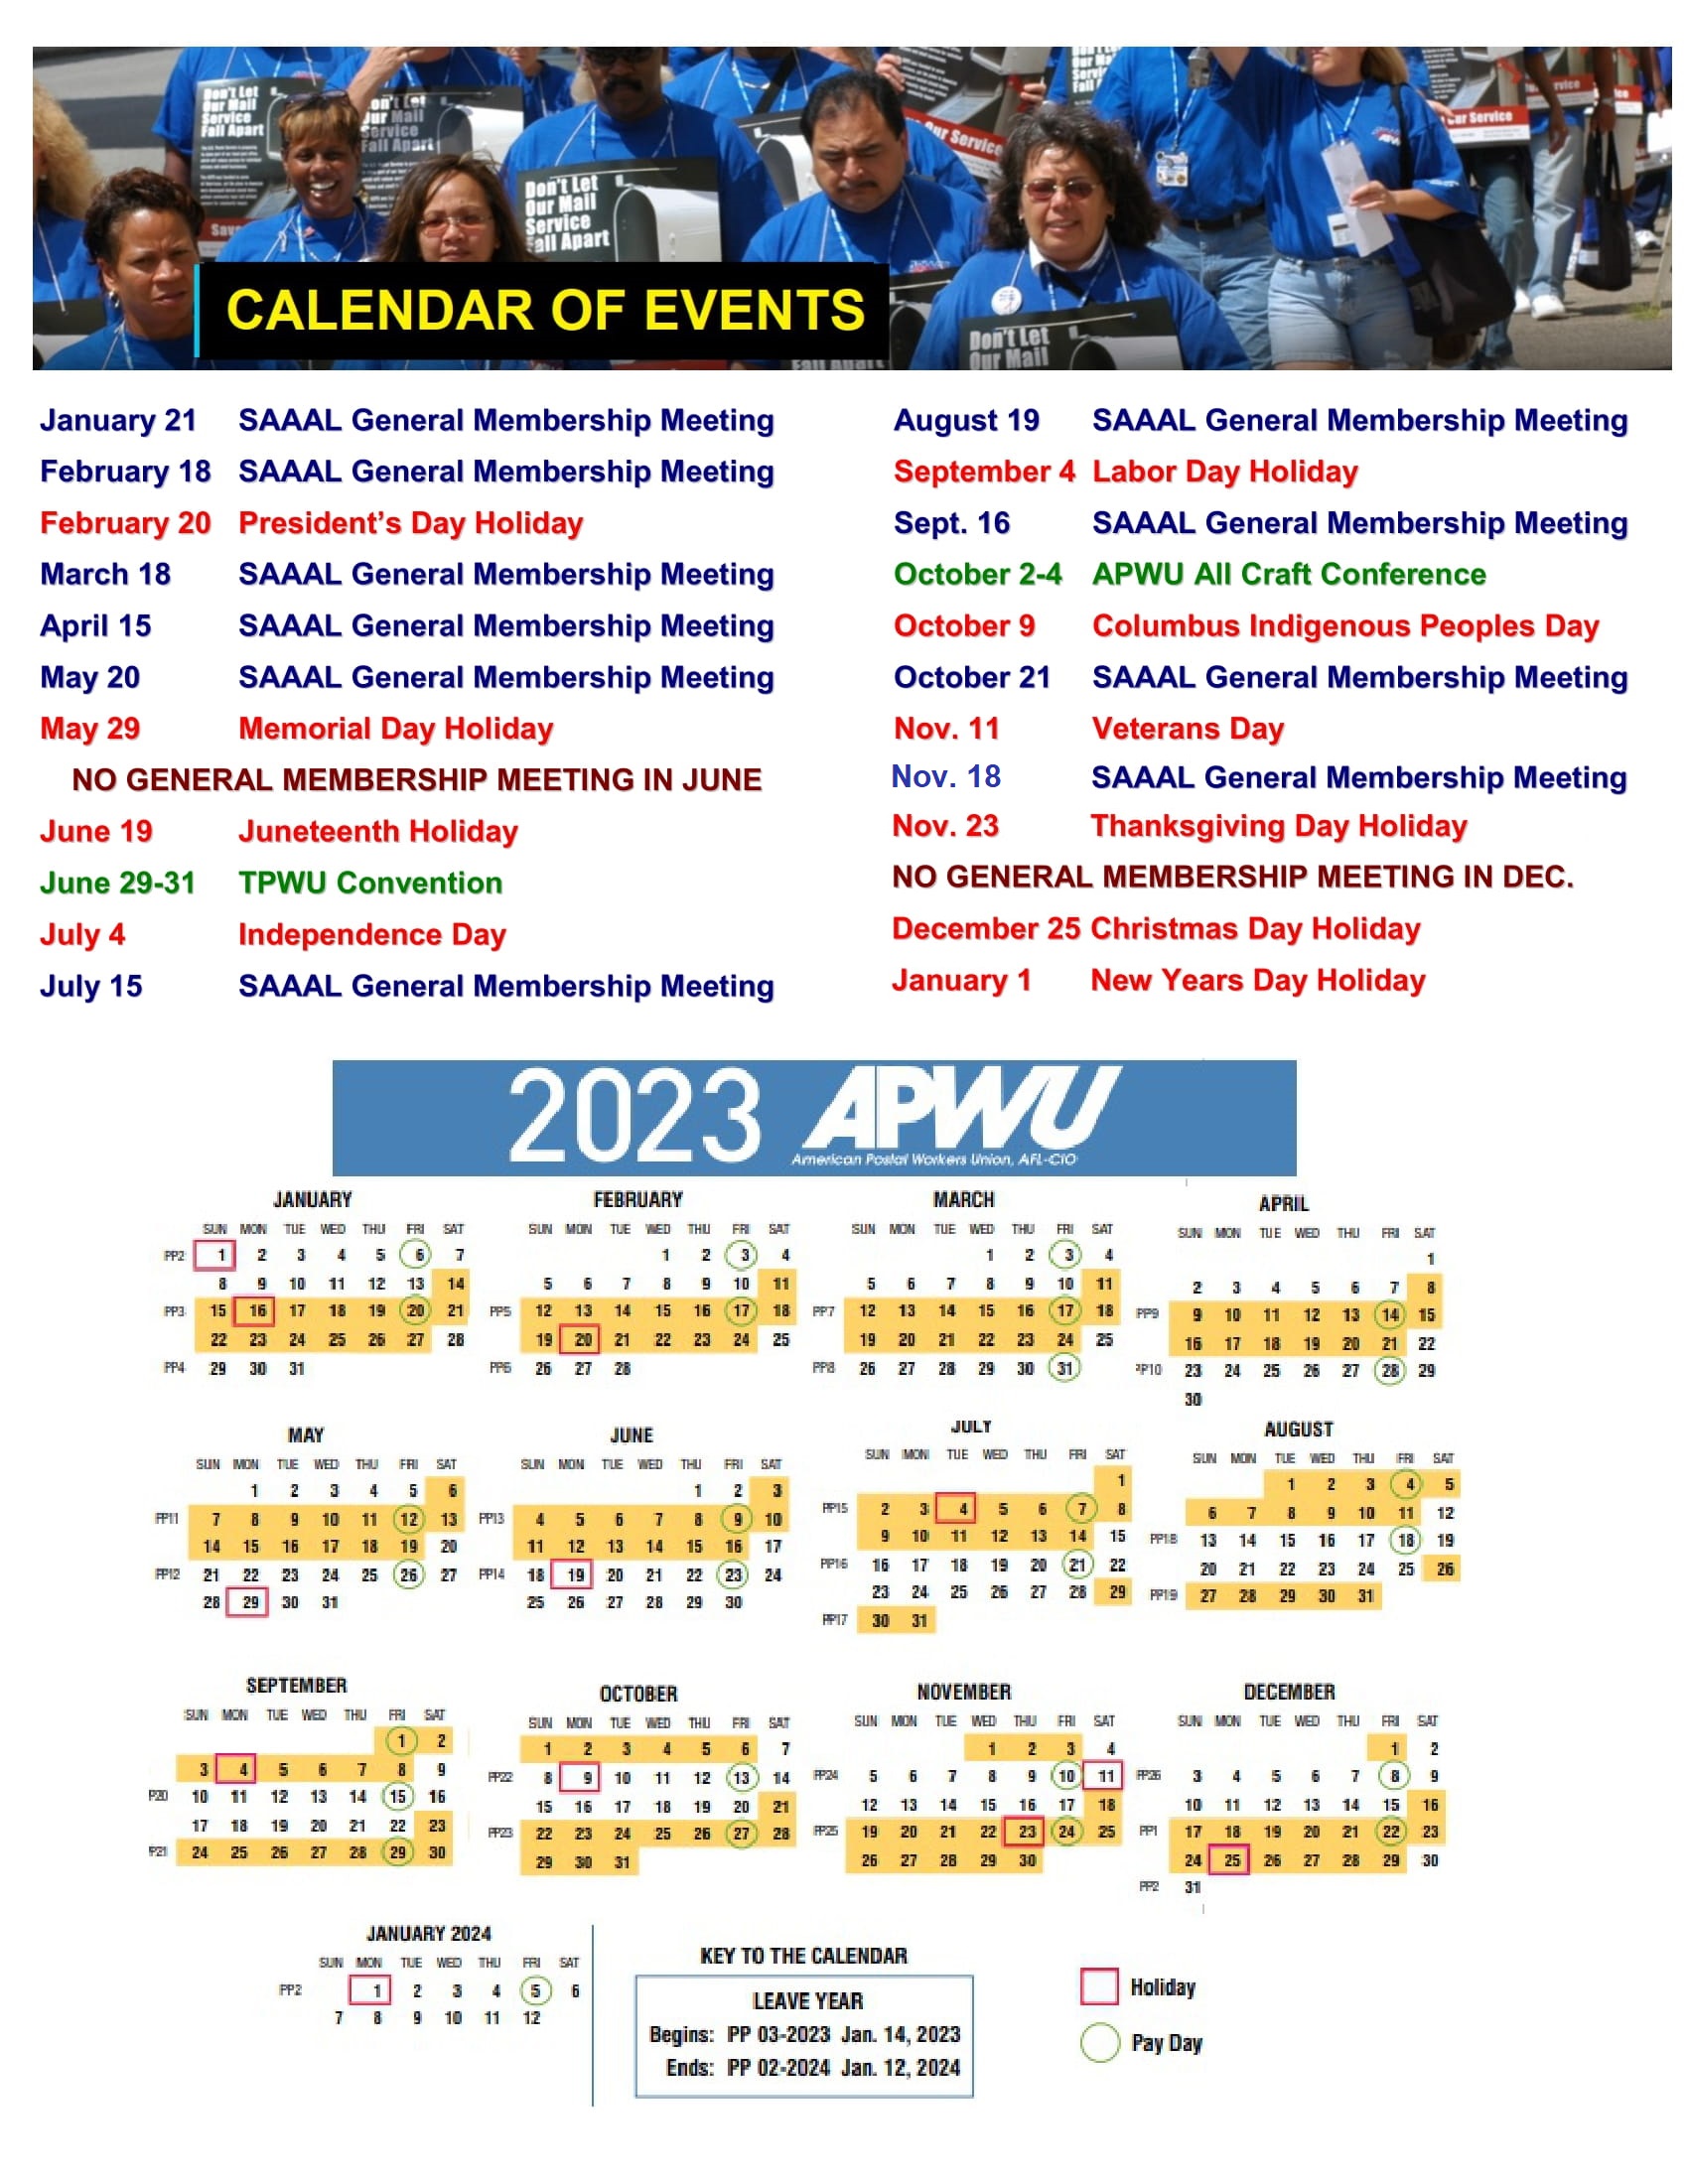 Calendar of Events APWU